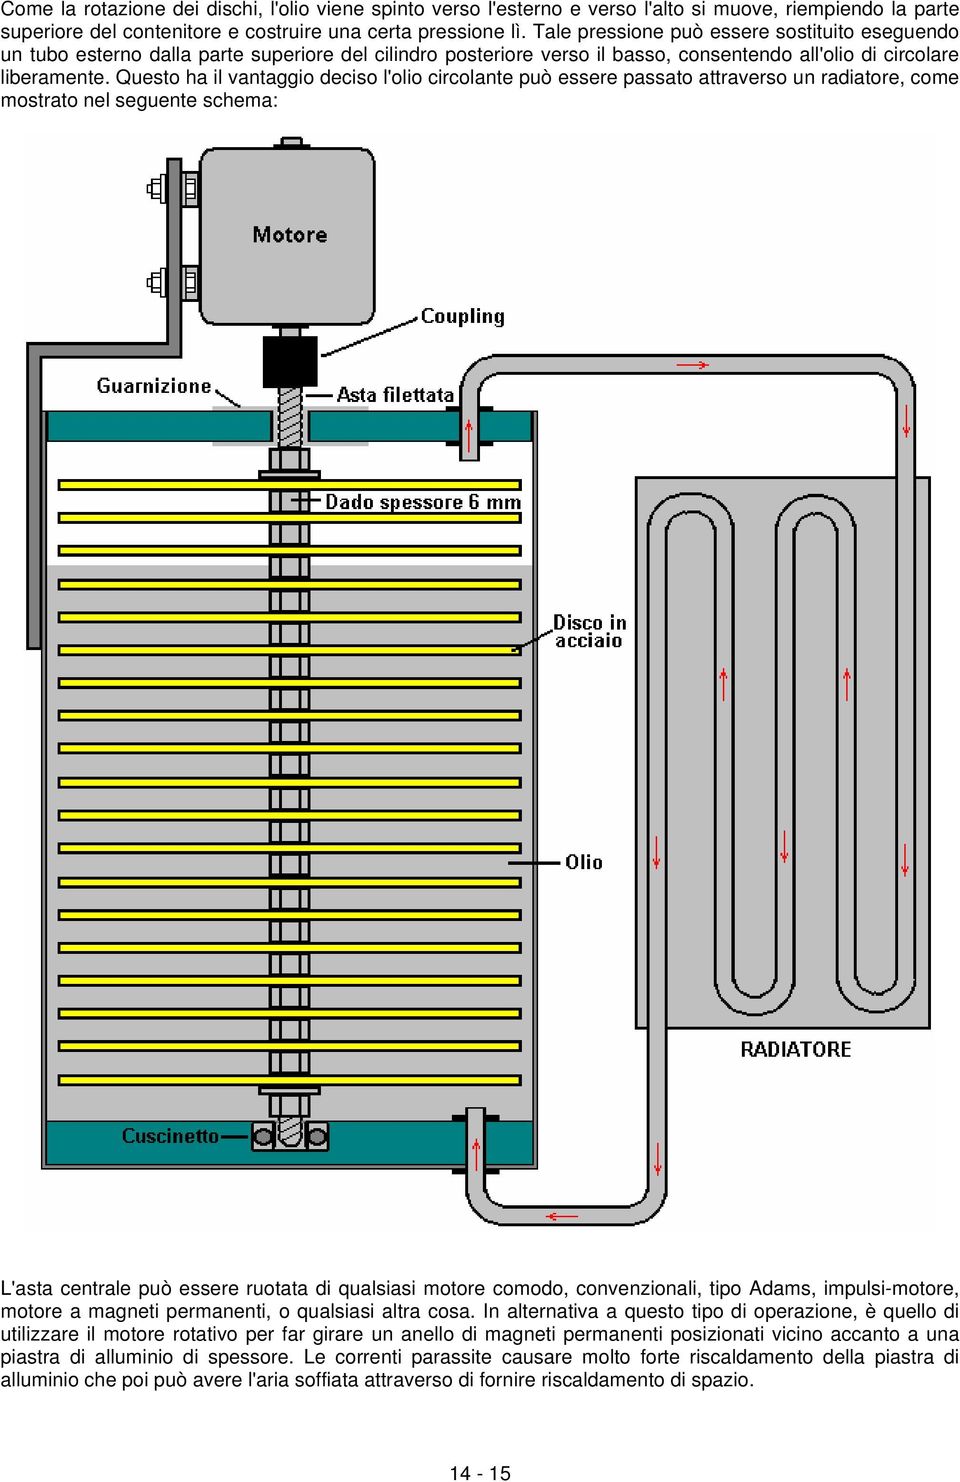 Questo ha il vantaggio deciso l'olio circolante può essere passato attraverso un radiatore, come mostrato nel seguente schema: L'asta centrale può essere ruotata di qualsiasi motore comodo,